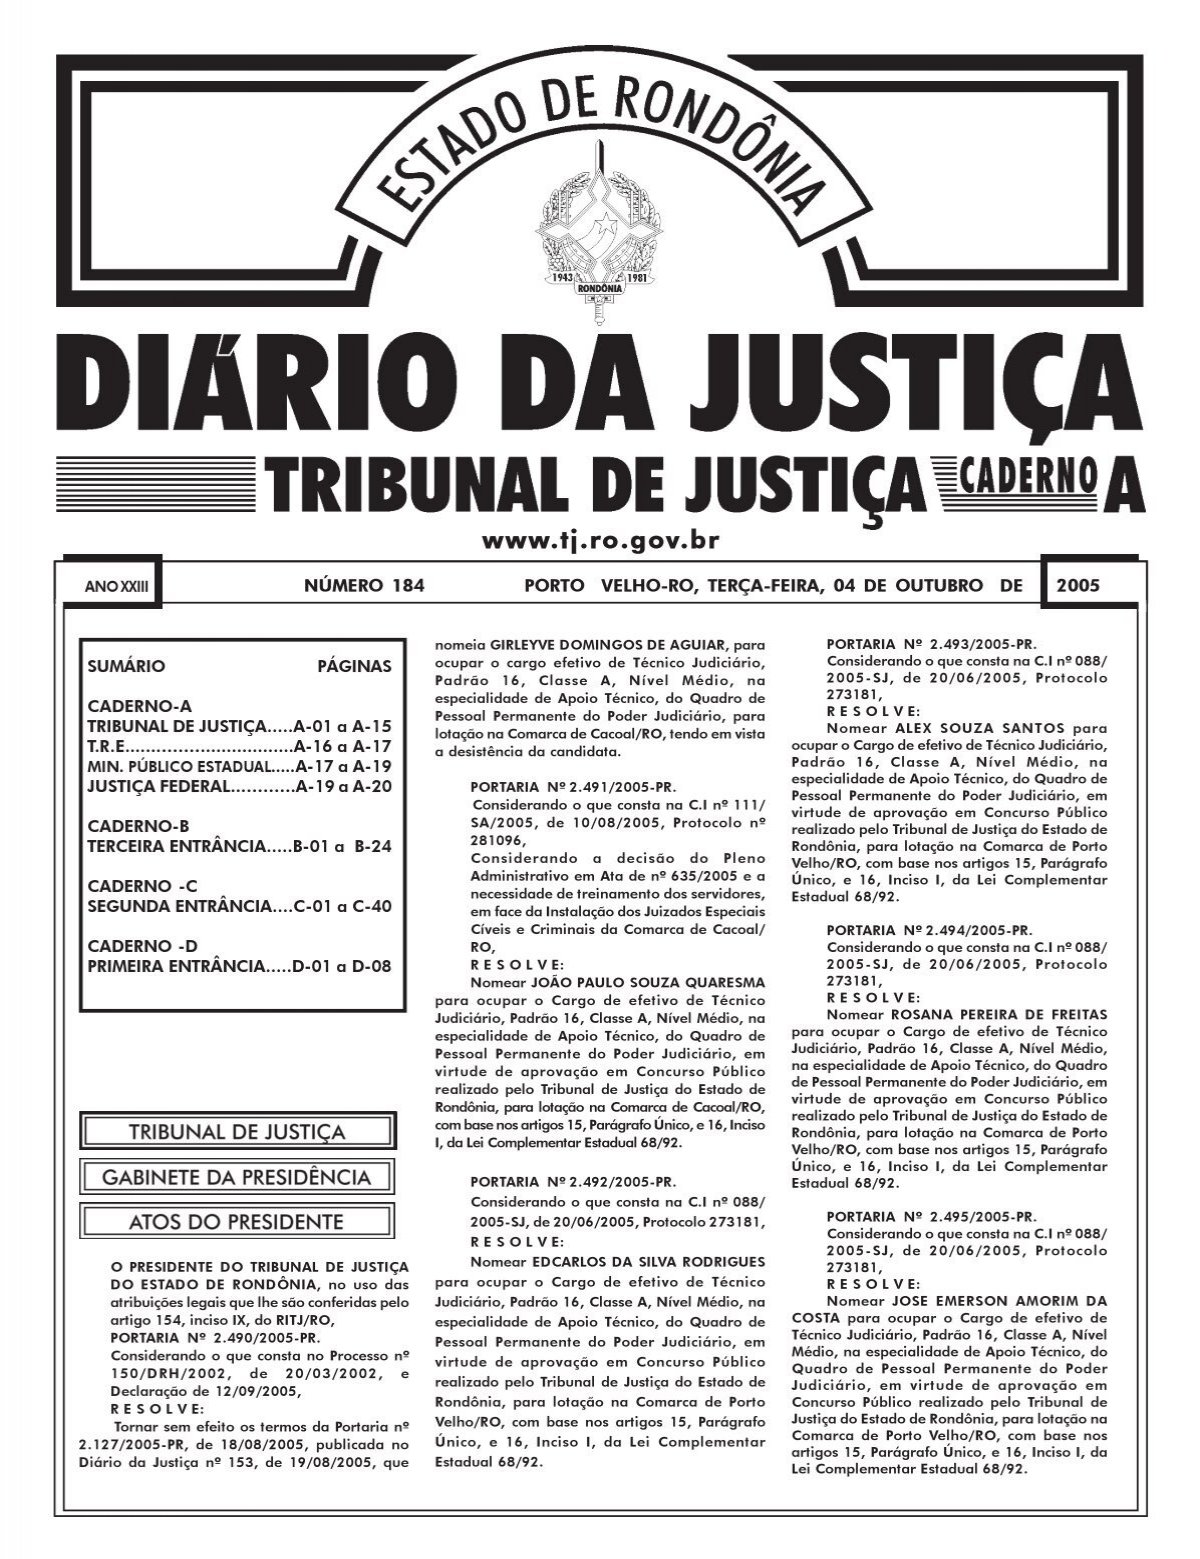 Ana Helena German - Assistente Judiciário - Tribunal de Justiça do Estado  de Minas Gerais